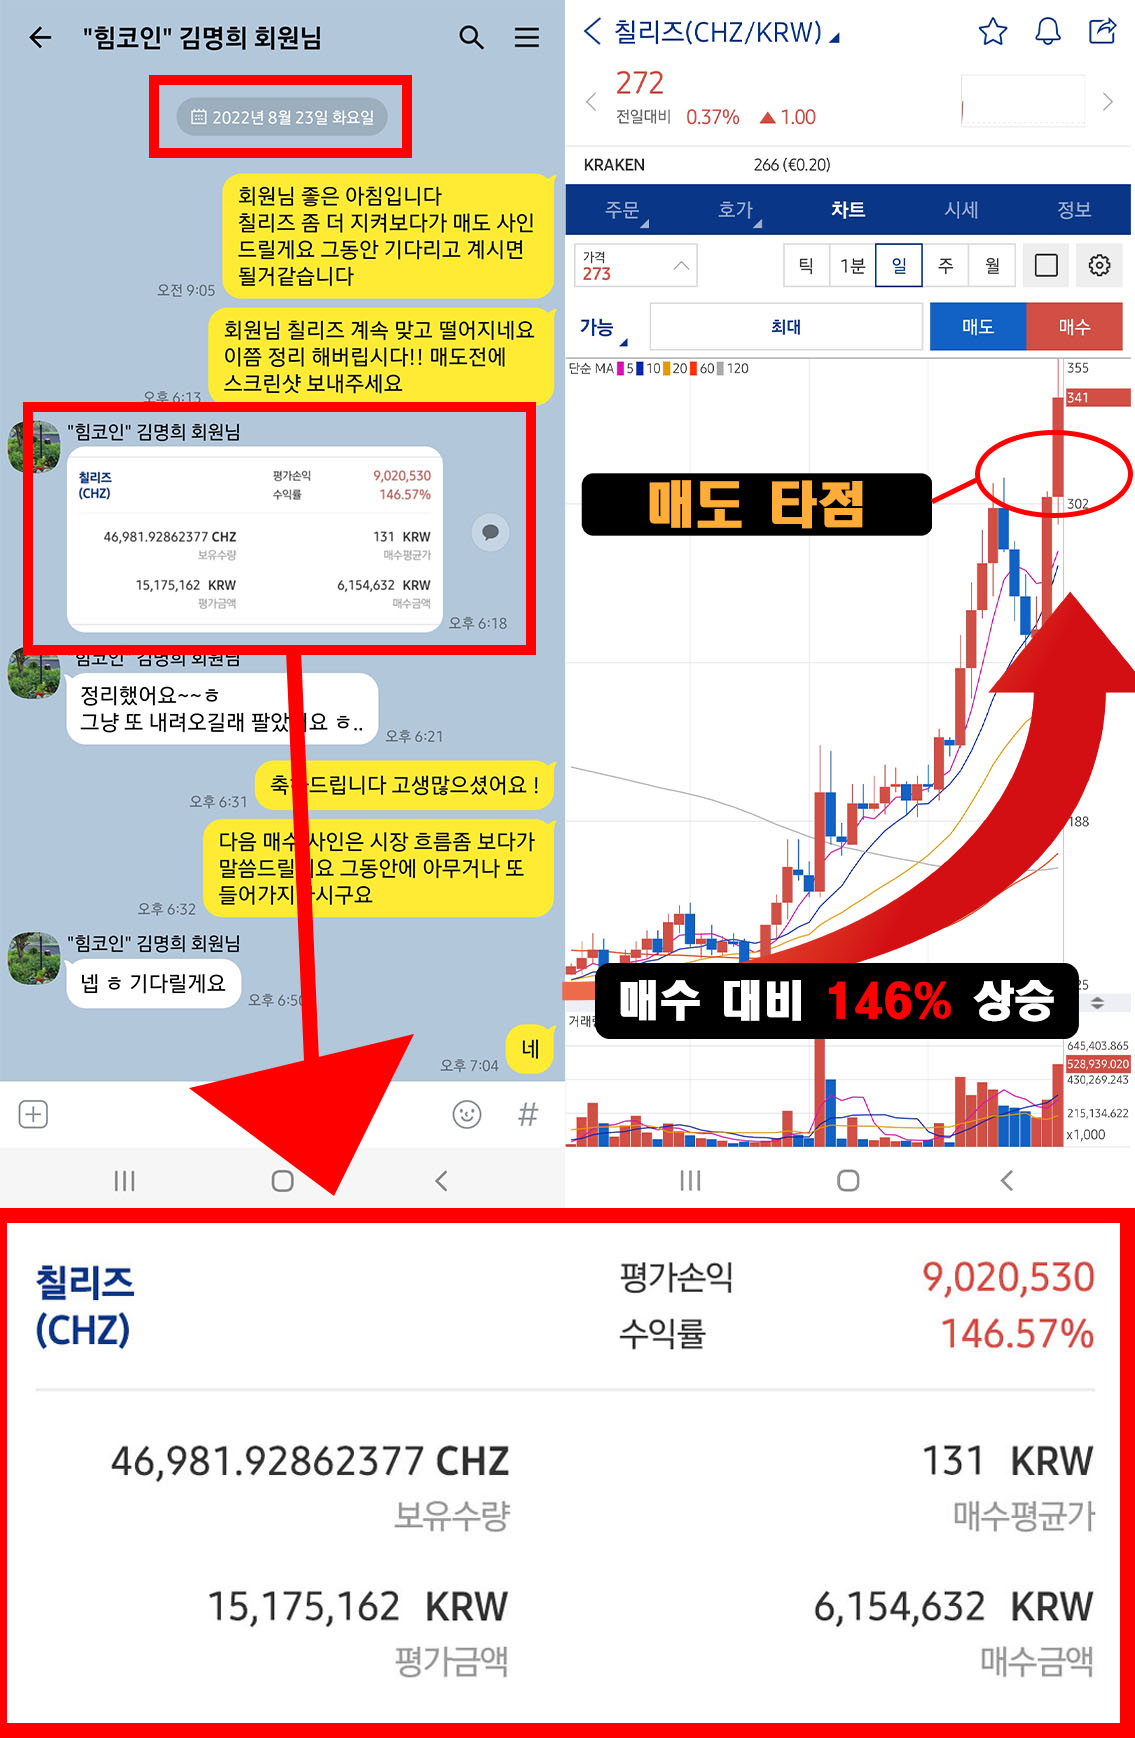 멤버쉽 김*희 회원님 칠리즈(CHZ) 146% 수익인증!